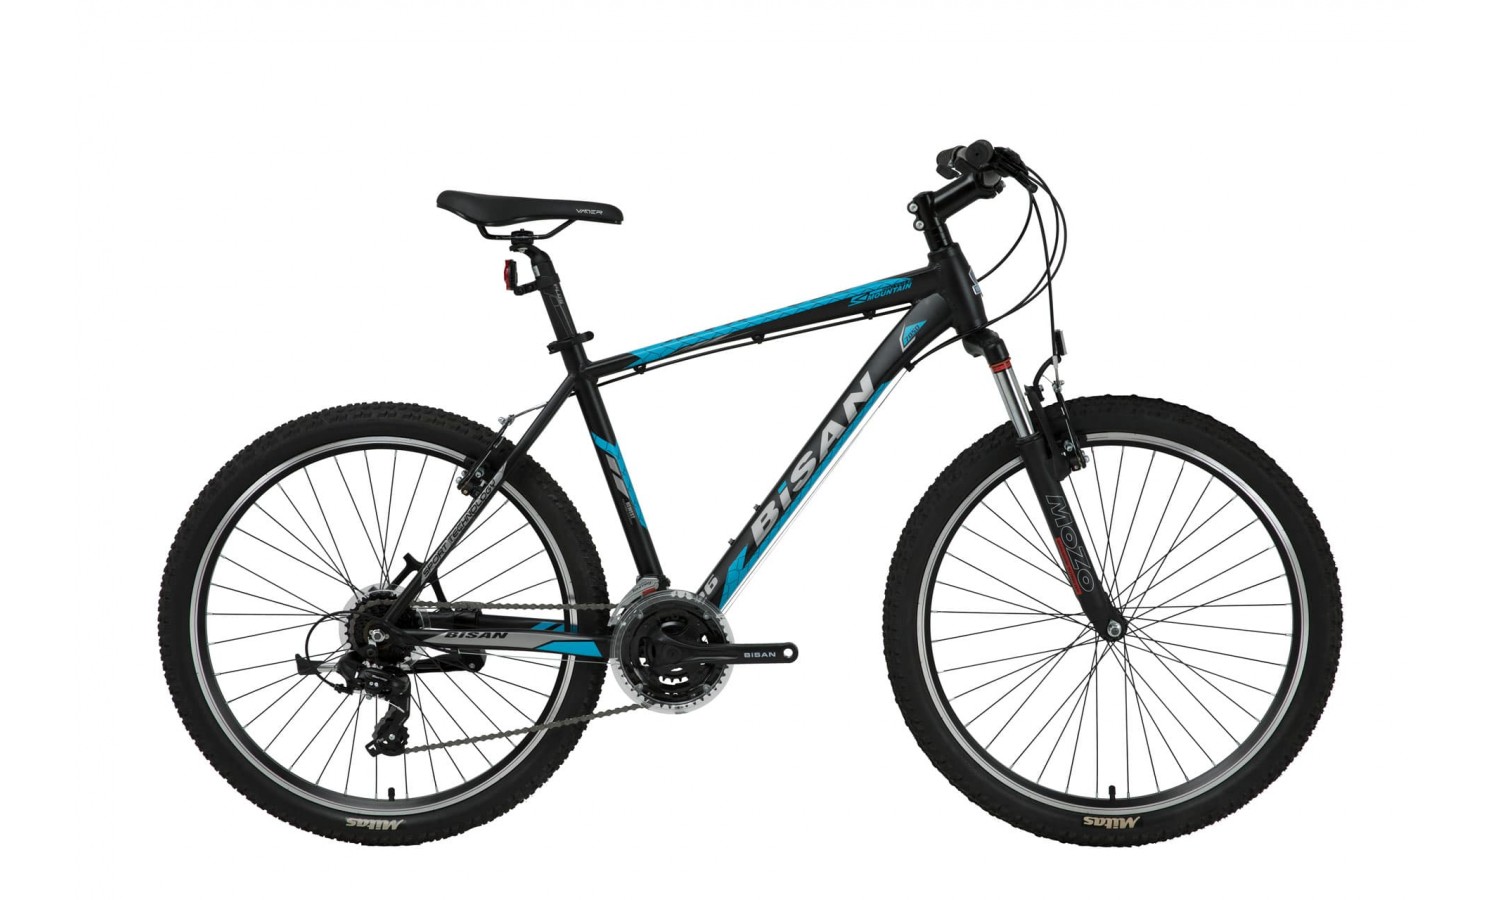 Bisan Mtx 7050 27.5 Jant V-Fren Dağ Bisikleti (Siyah-Mavi)